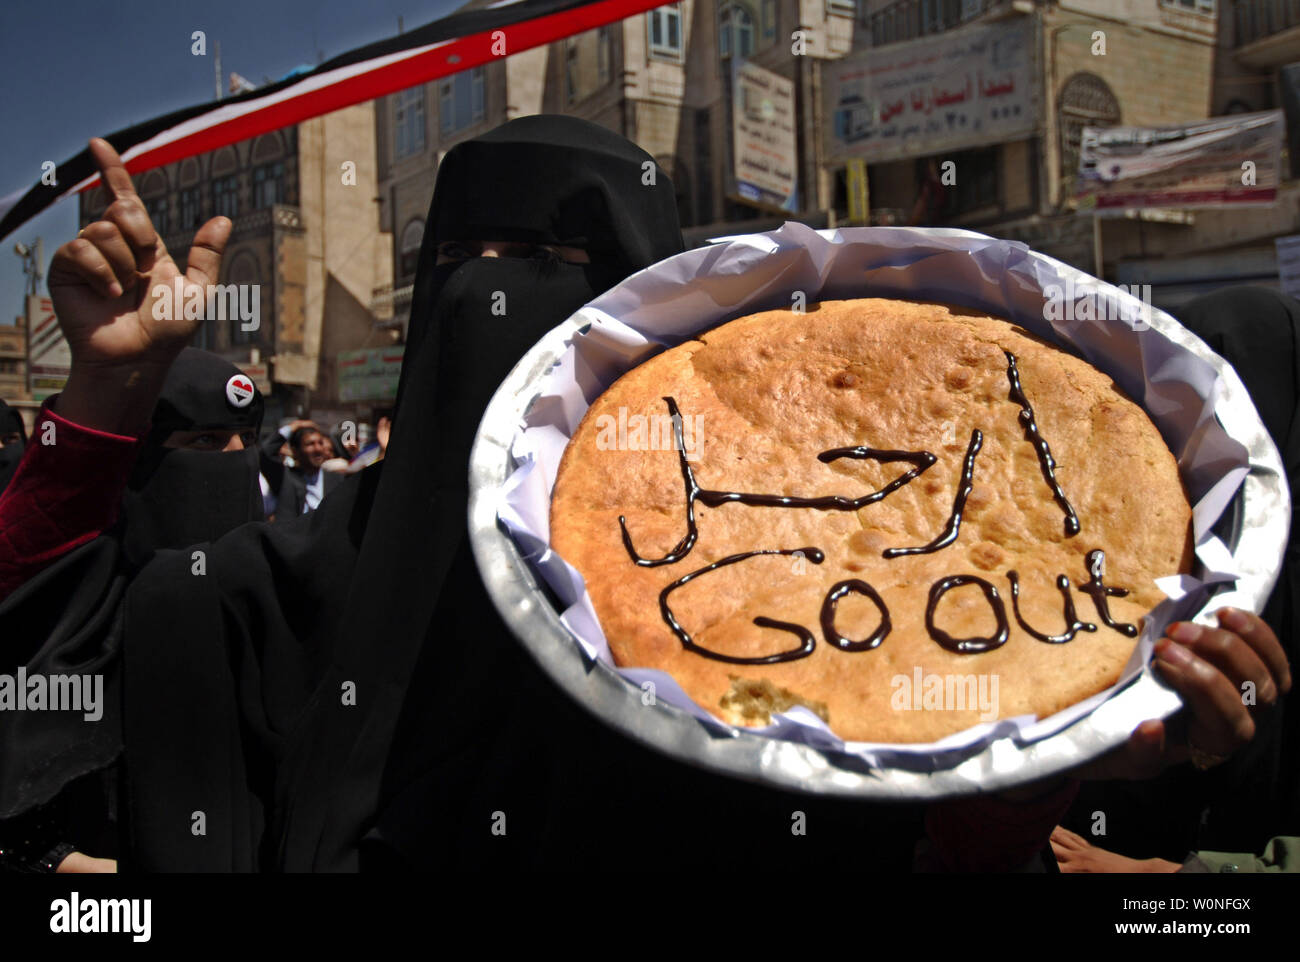 Un gouvernement anti-woma yéménites manifestant tenir un gâteau qui se lit "sortir" en arabe, au cours d'une manifestation à Al-Hurriya (La Liberté), dans la capitale, le 2 mars 2011. Des démonstrations de plus en plus à Sanaa, le torchage sentiment sécessionniste dans le sud du pays et une rébellion tribale dans le nord ont contribué à ébranler le leadership du pays. UPI/Mohammad Abdullah Banque D'Images